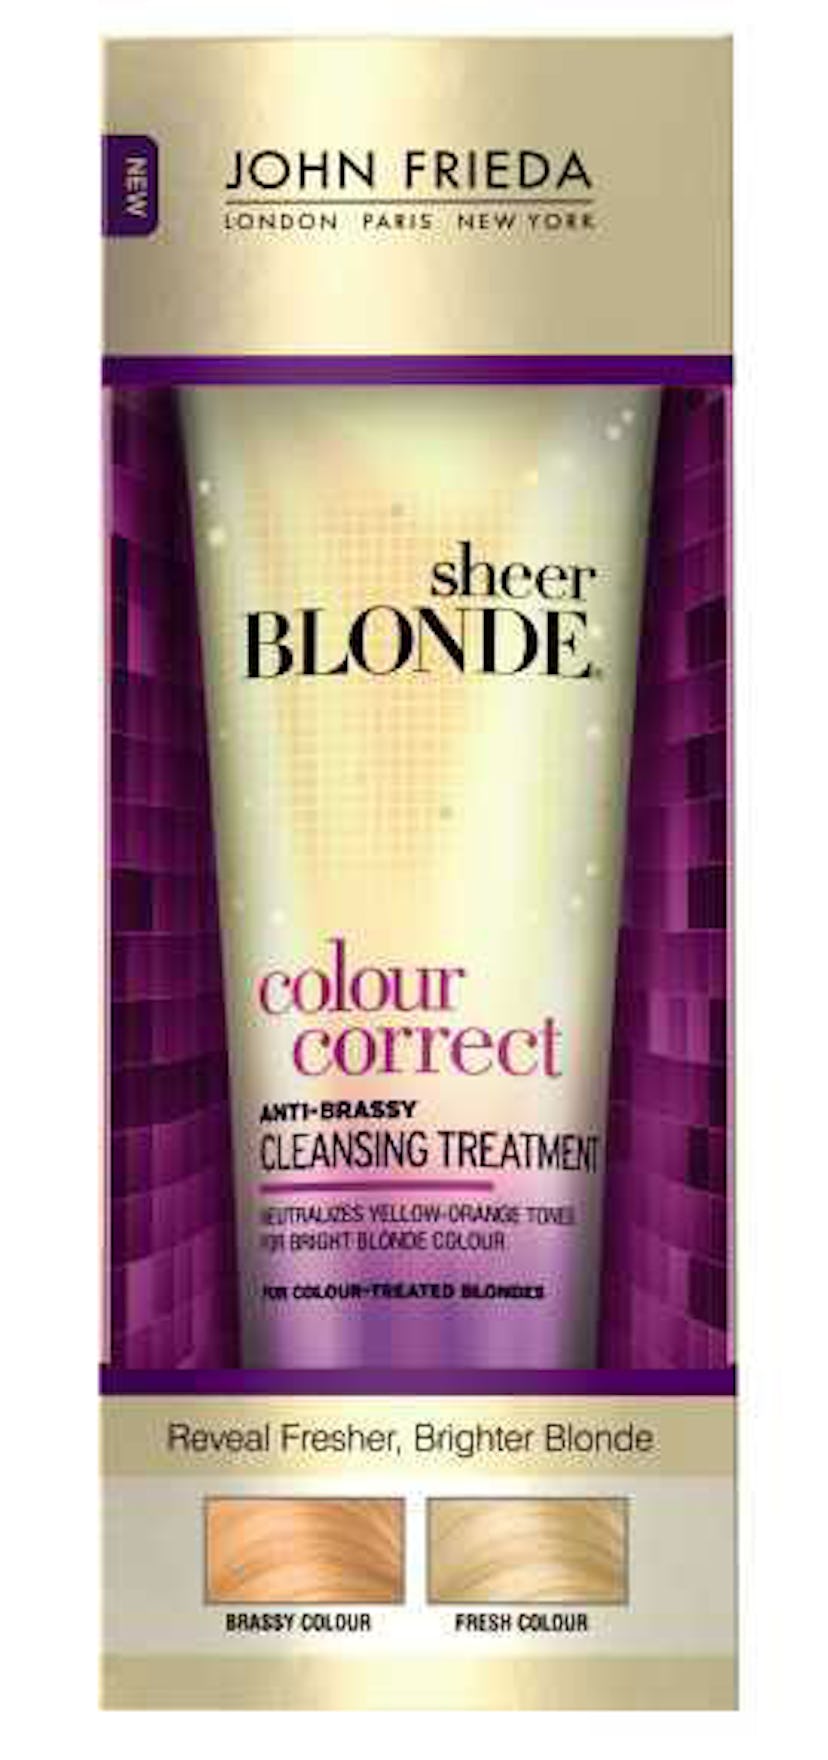 *John Frieda Sheer Blonde Colour Correct Anti-Brassy Cleansing Treatment, $9,* *[johnfrieda.com](htt...